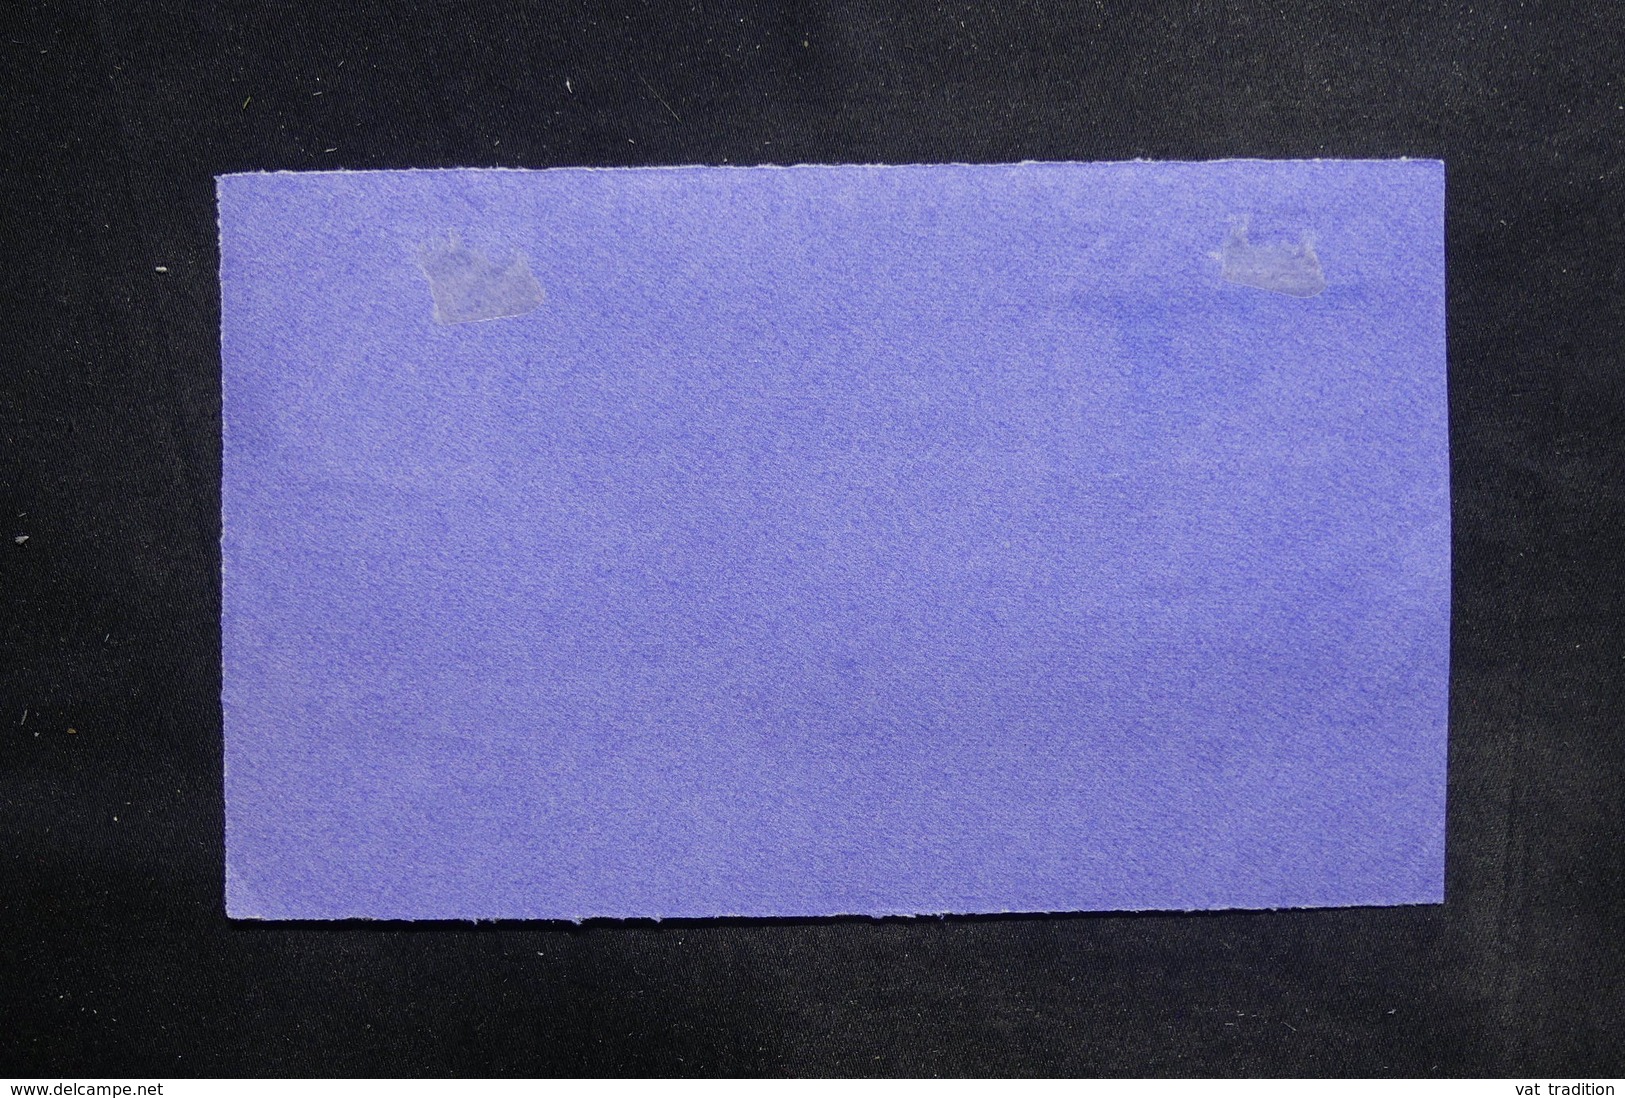 AUSTRALIE - Enveloppe ( Devant ) En Recommandé De Northbridge En 1926 Pour La France - L 36329 - Covers & Documents